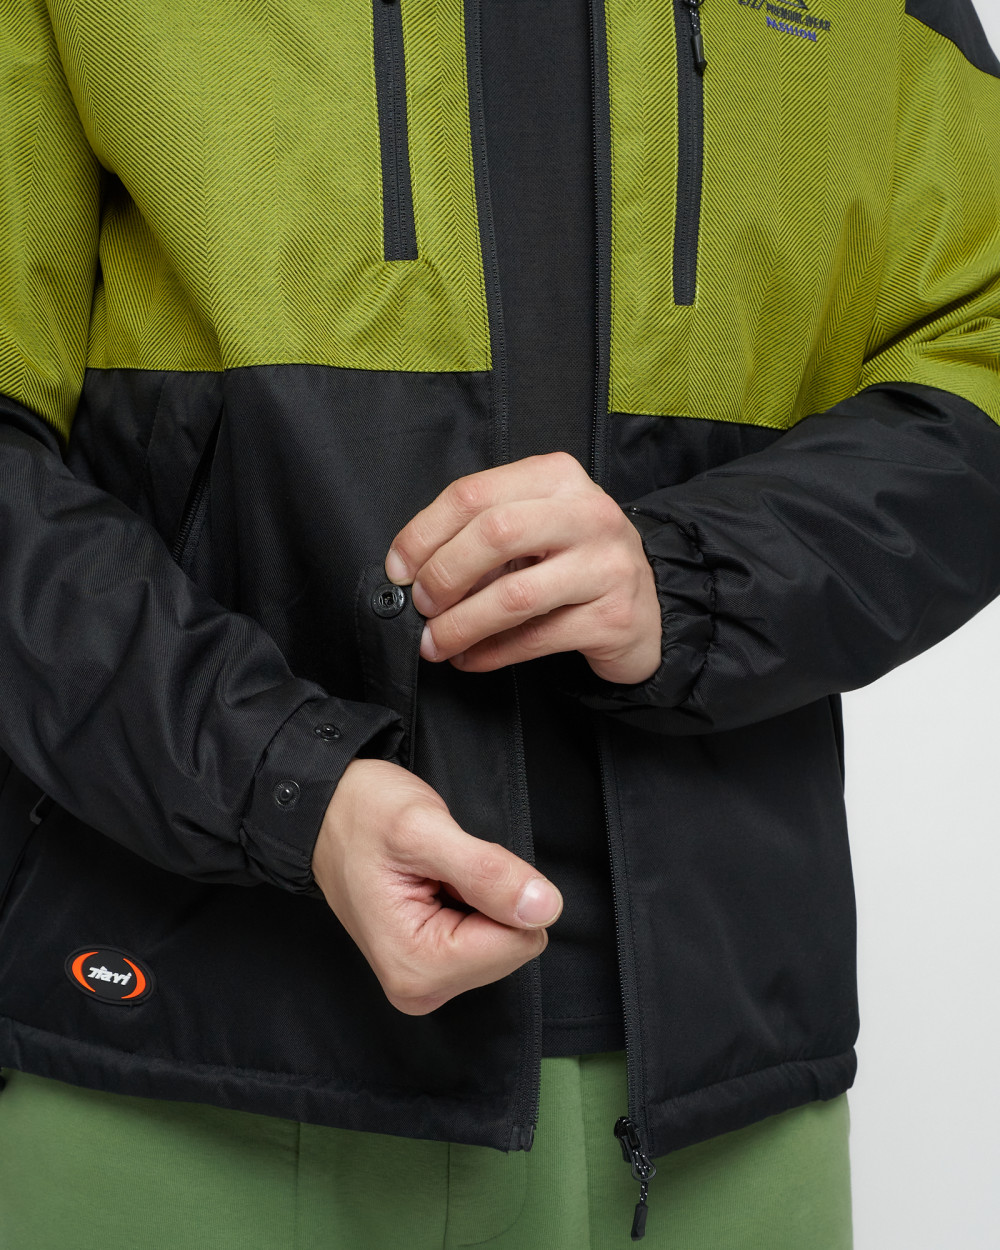 Купить куртку мужскую спортивную весеннюю оптом от производителя недорого в Москве 8808Ch 1